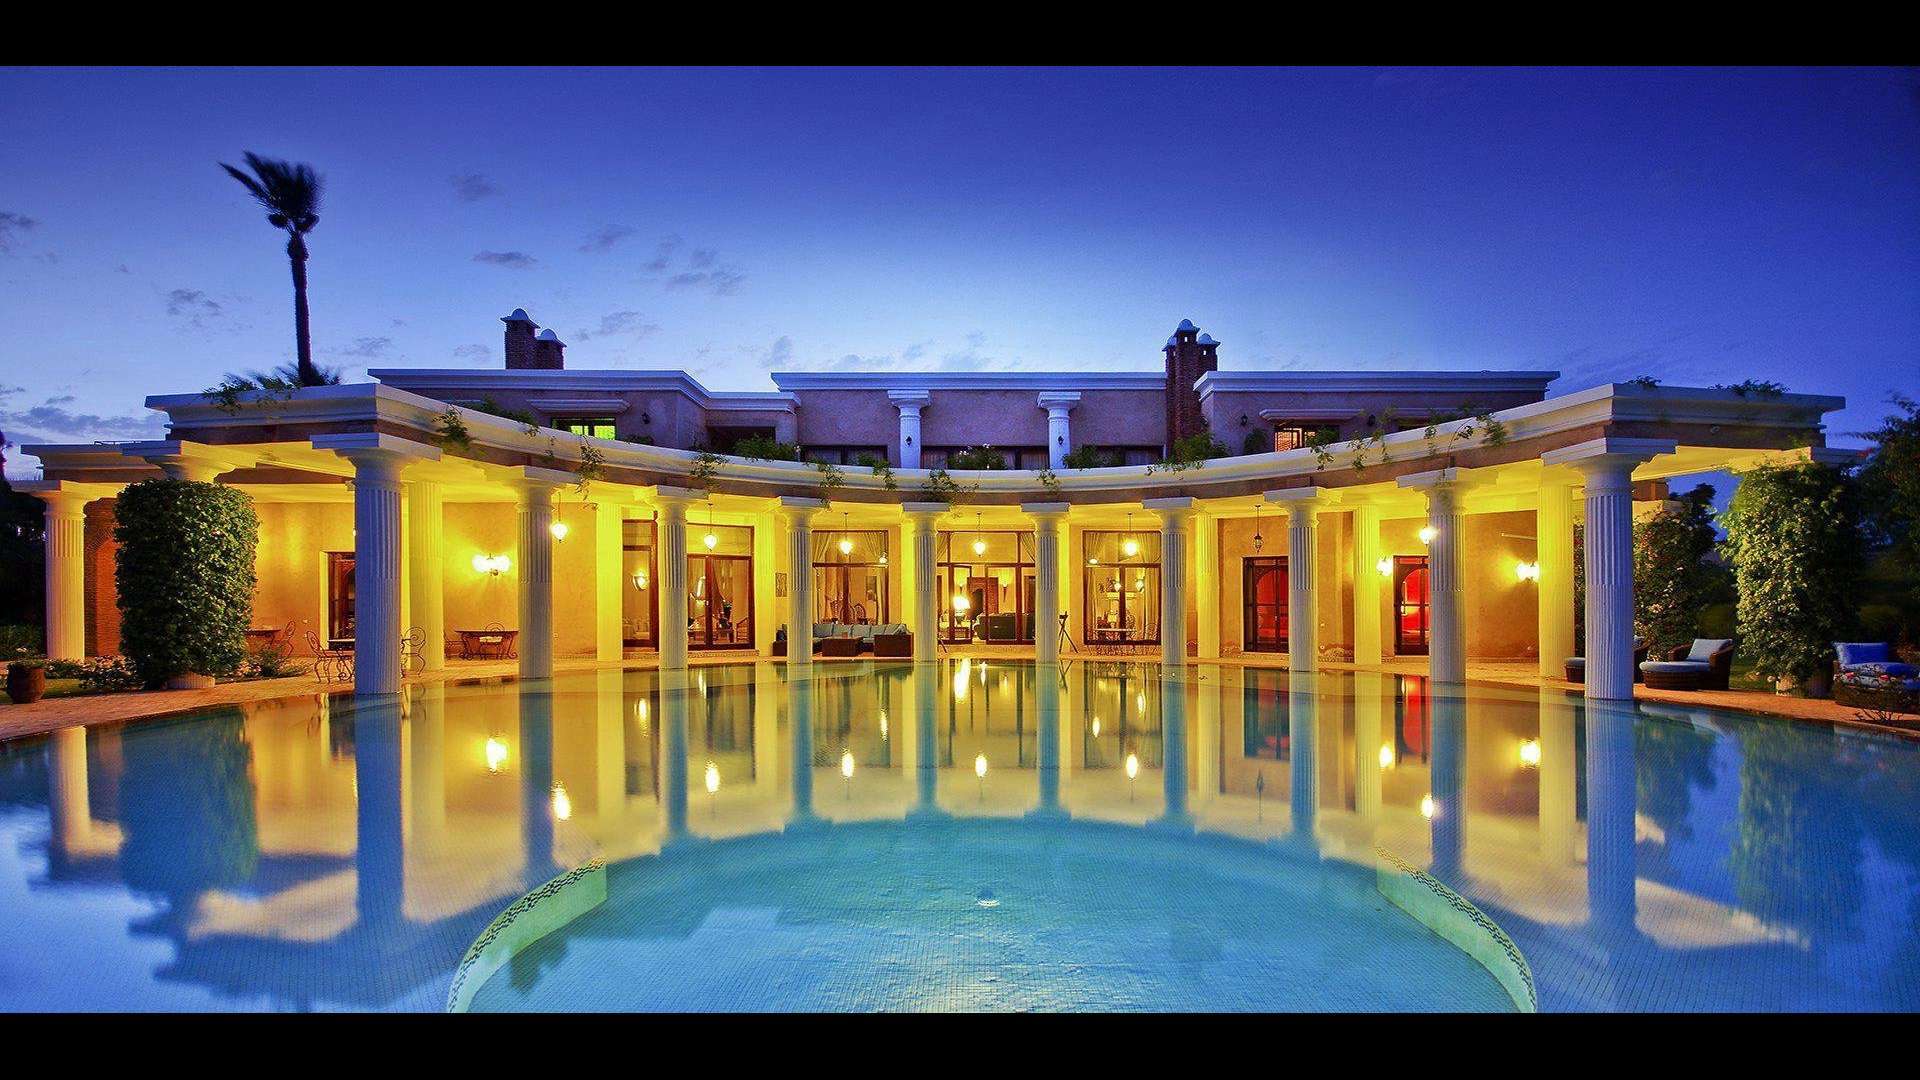 Location de vacances,Villa,Villa 5 suites de prestige avec spa privé et services hôteliers de haut niveau,Marrakech,Palmeraie